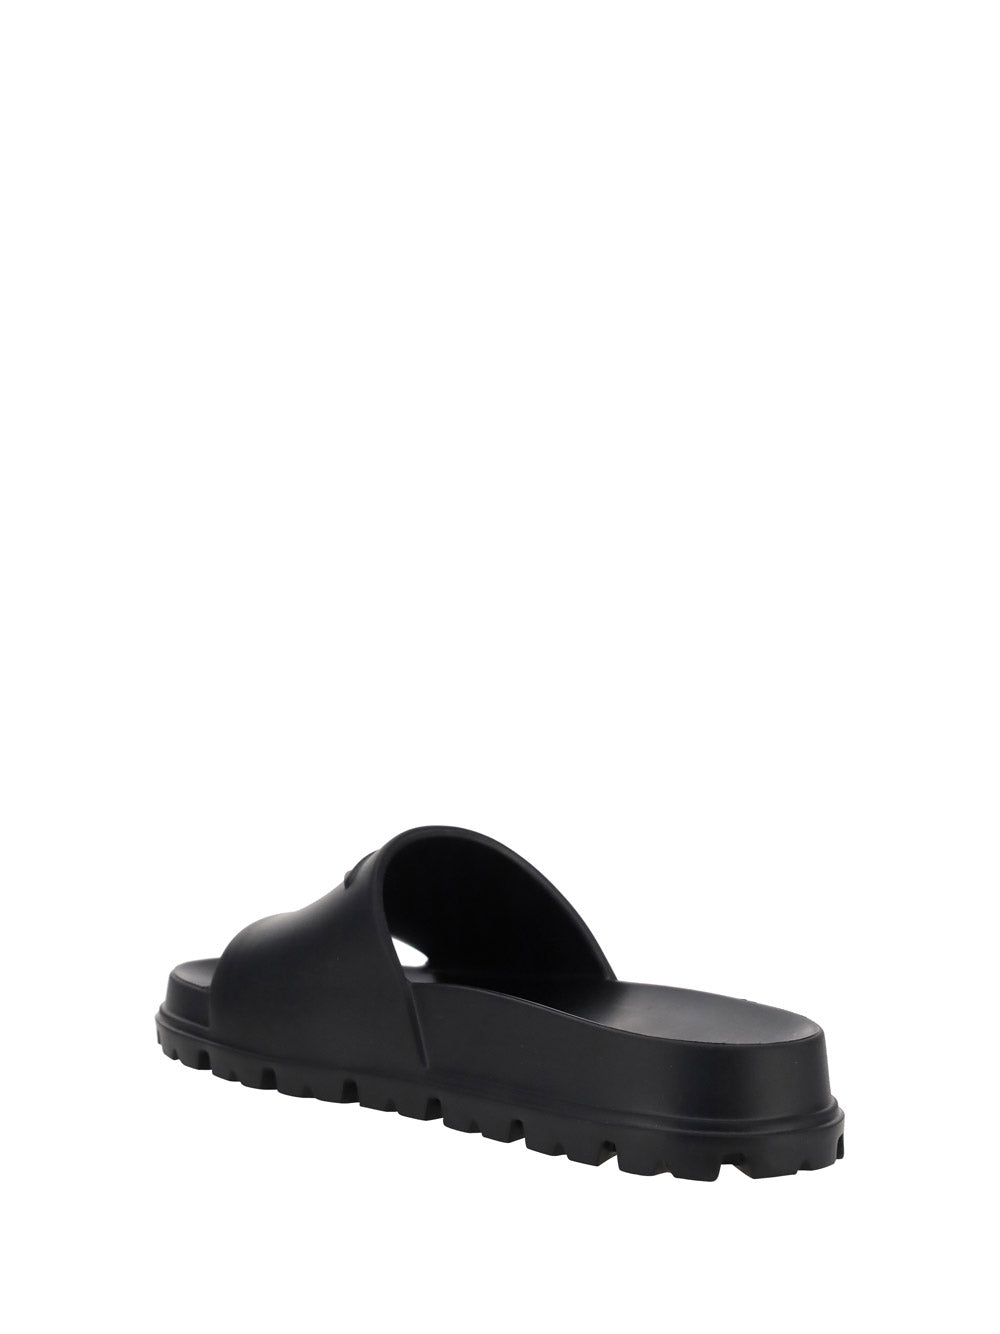 Rubber Sandals - Black.